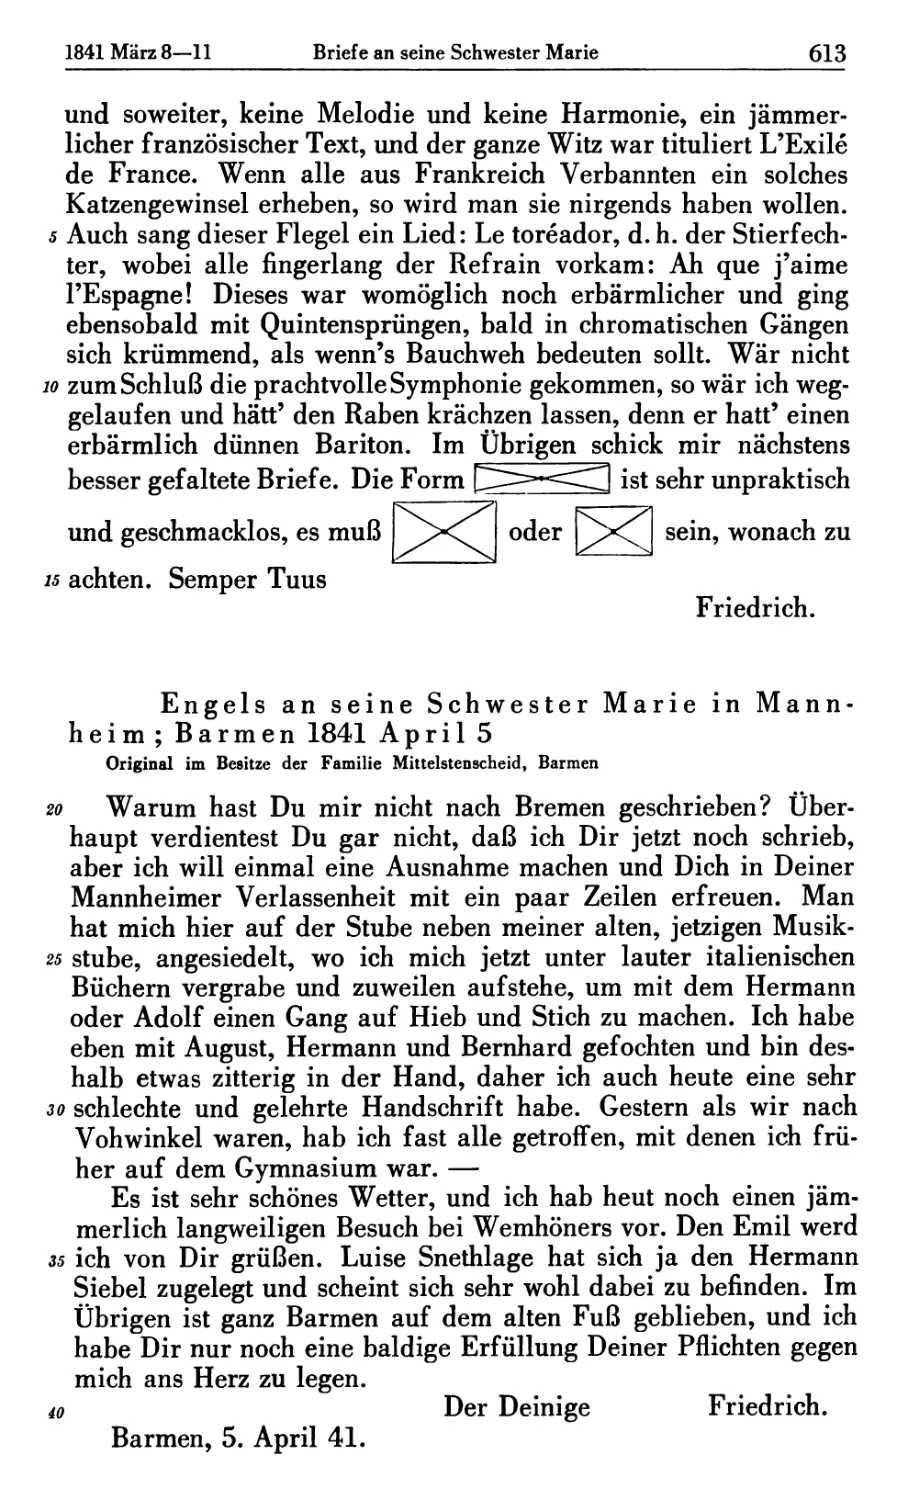 Engels an seine Schwester Marie in Mannheim; Barmen 1841 April 5